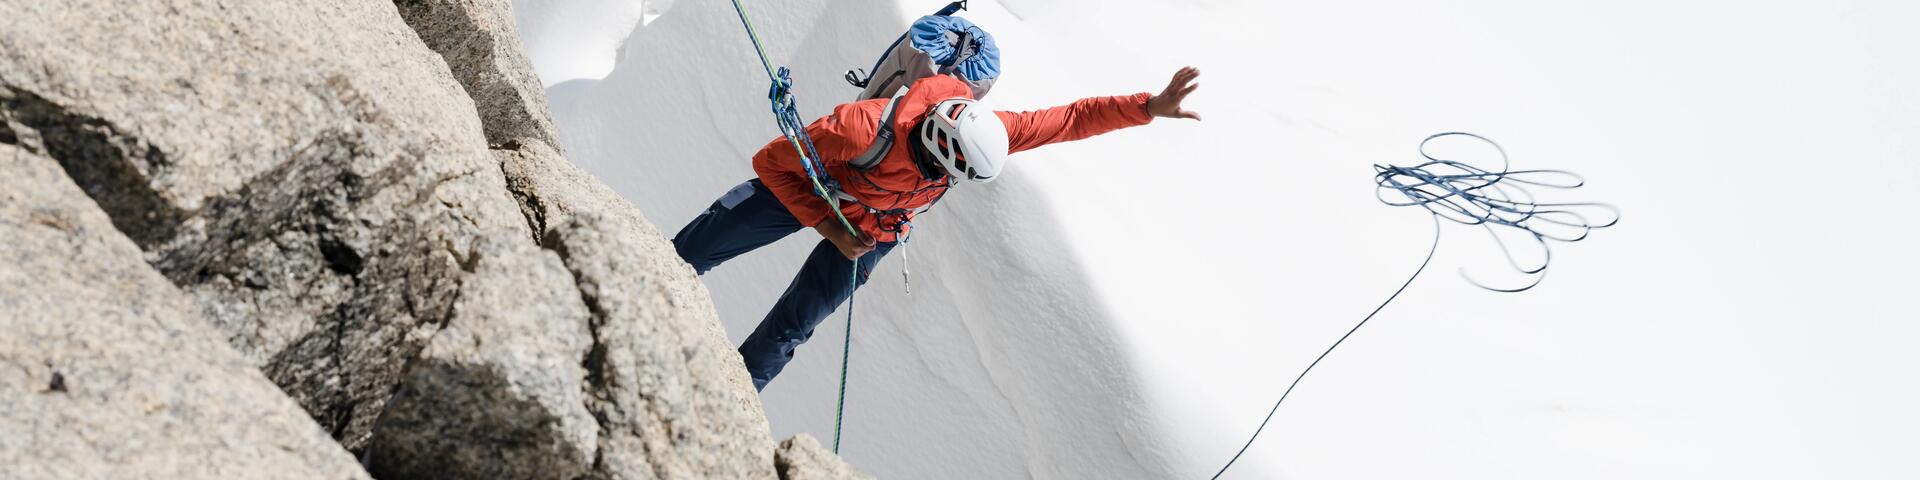 Alpinisme Simond Piolet Ocelot hyperlight